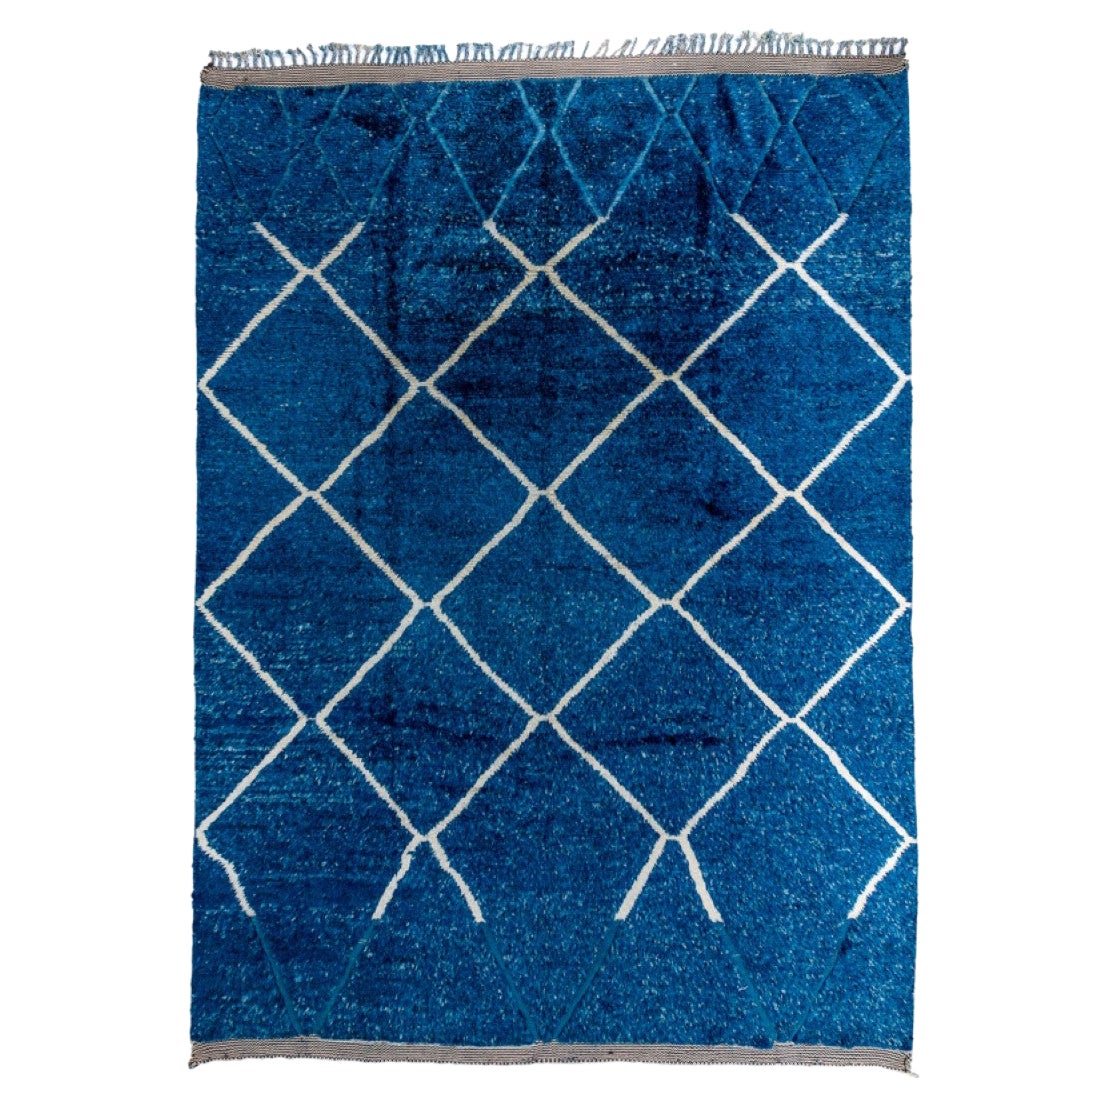 Tapis moderne bleu denim à motifs marocains